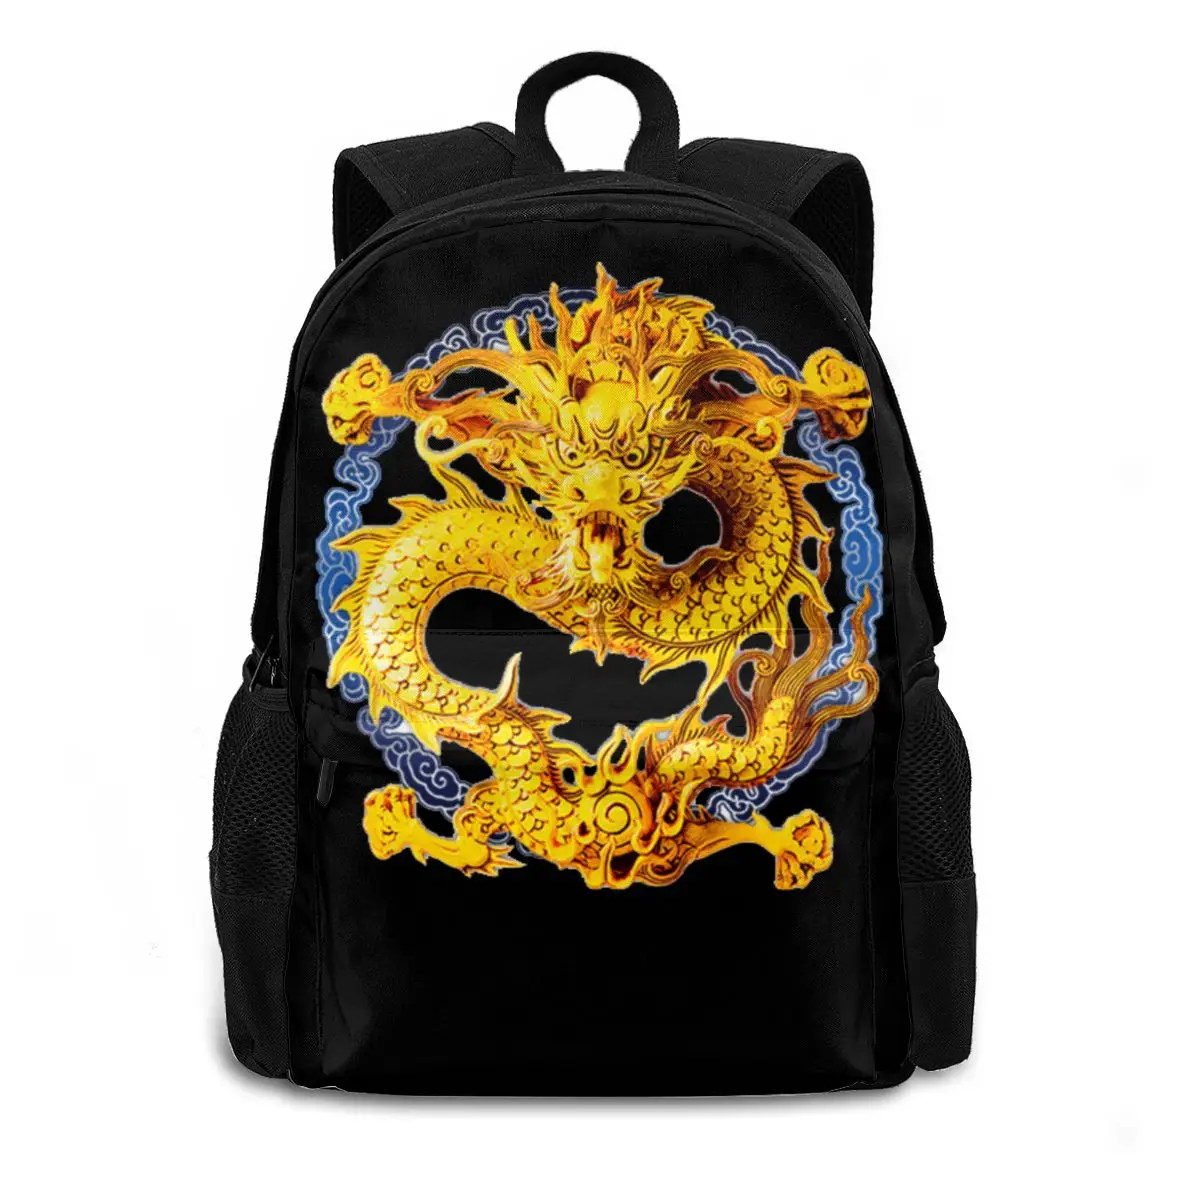 

Japanese art Backpack Team Chinese Dragon Ed Hardies Backpacks Trending Bag Man Woman Schoolbag